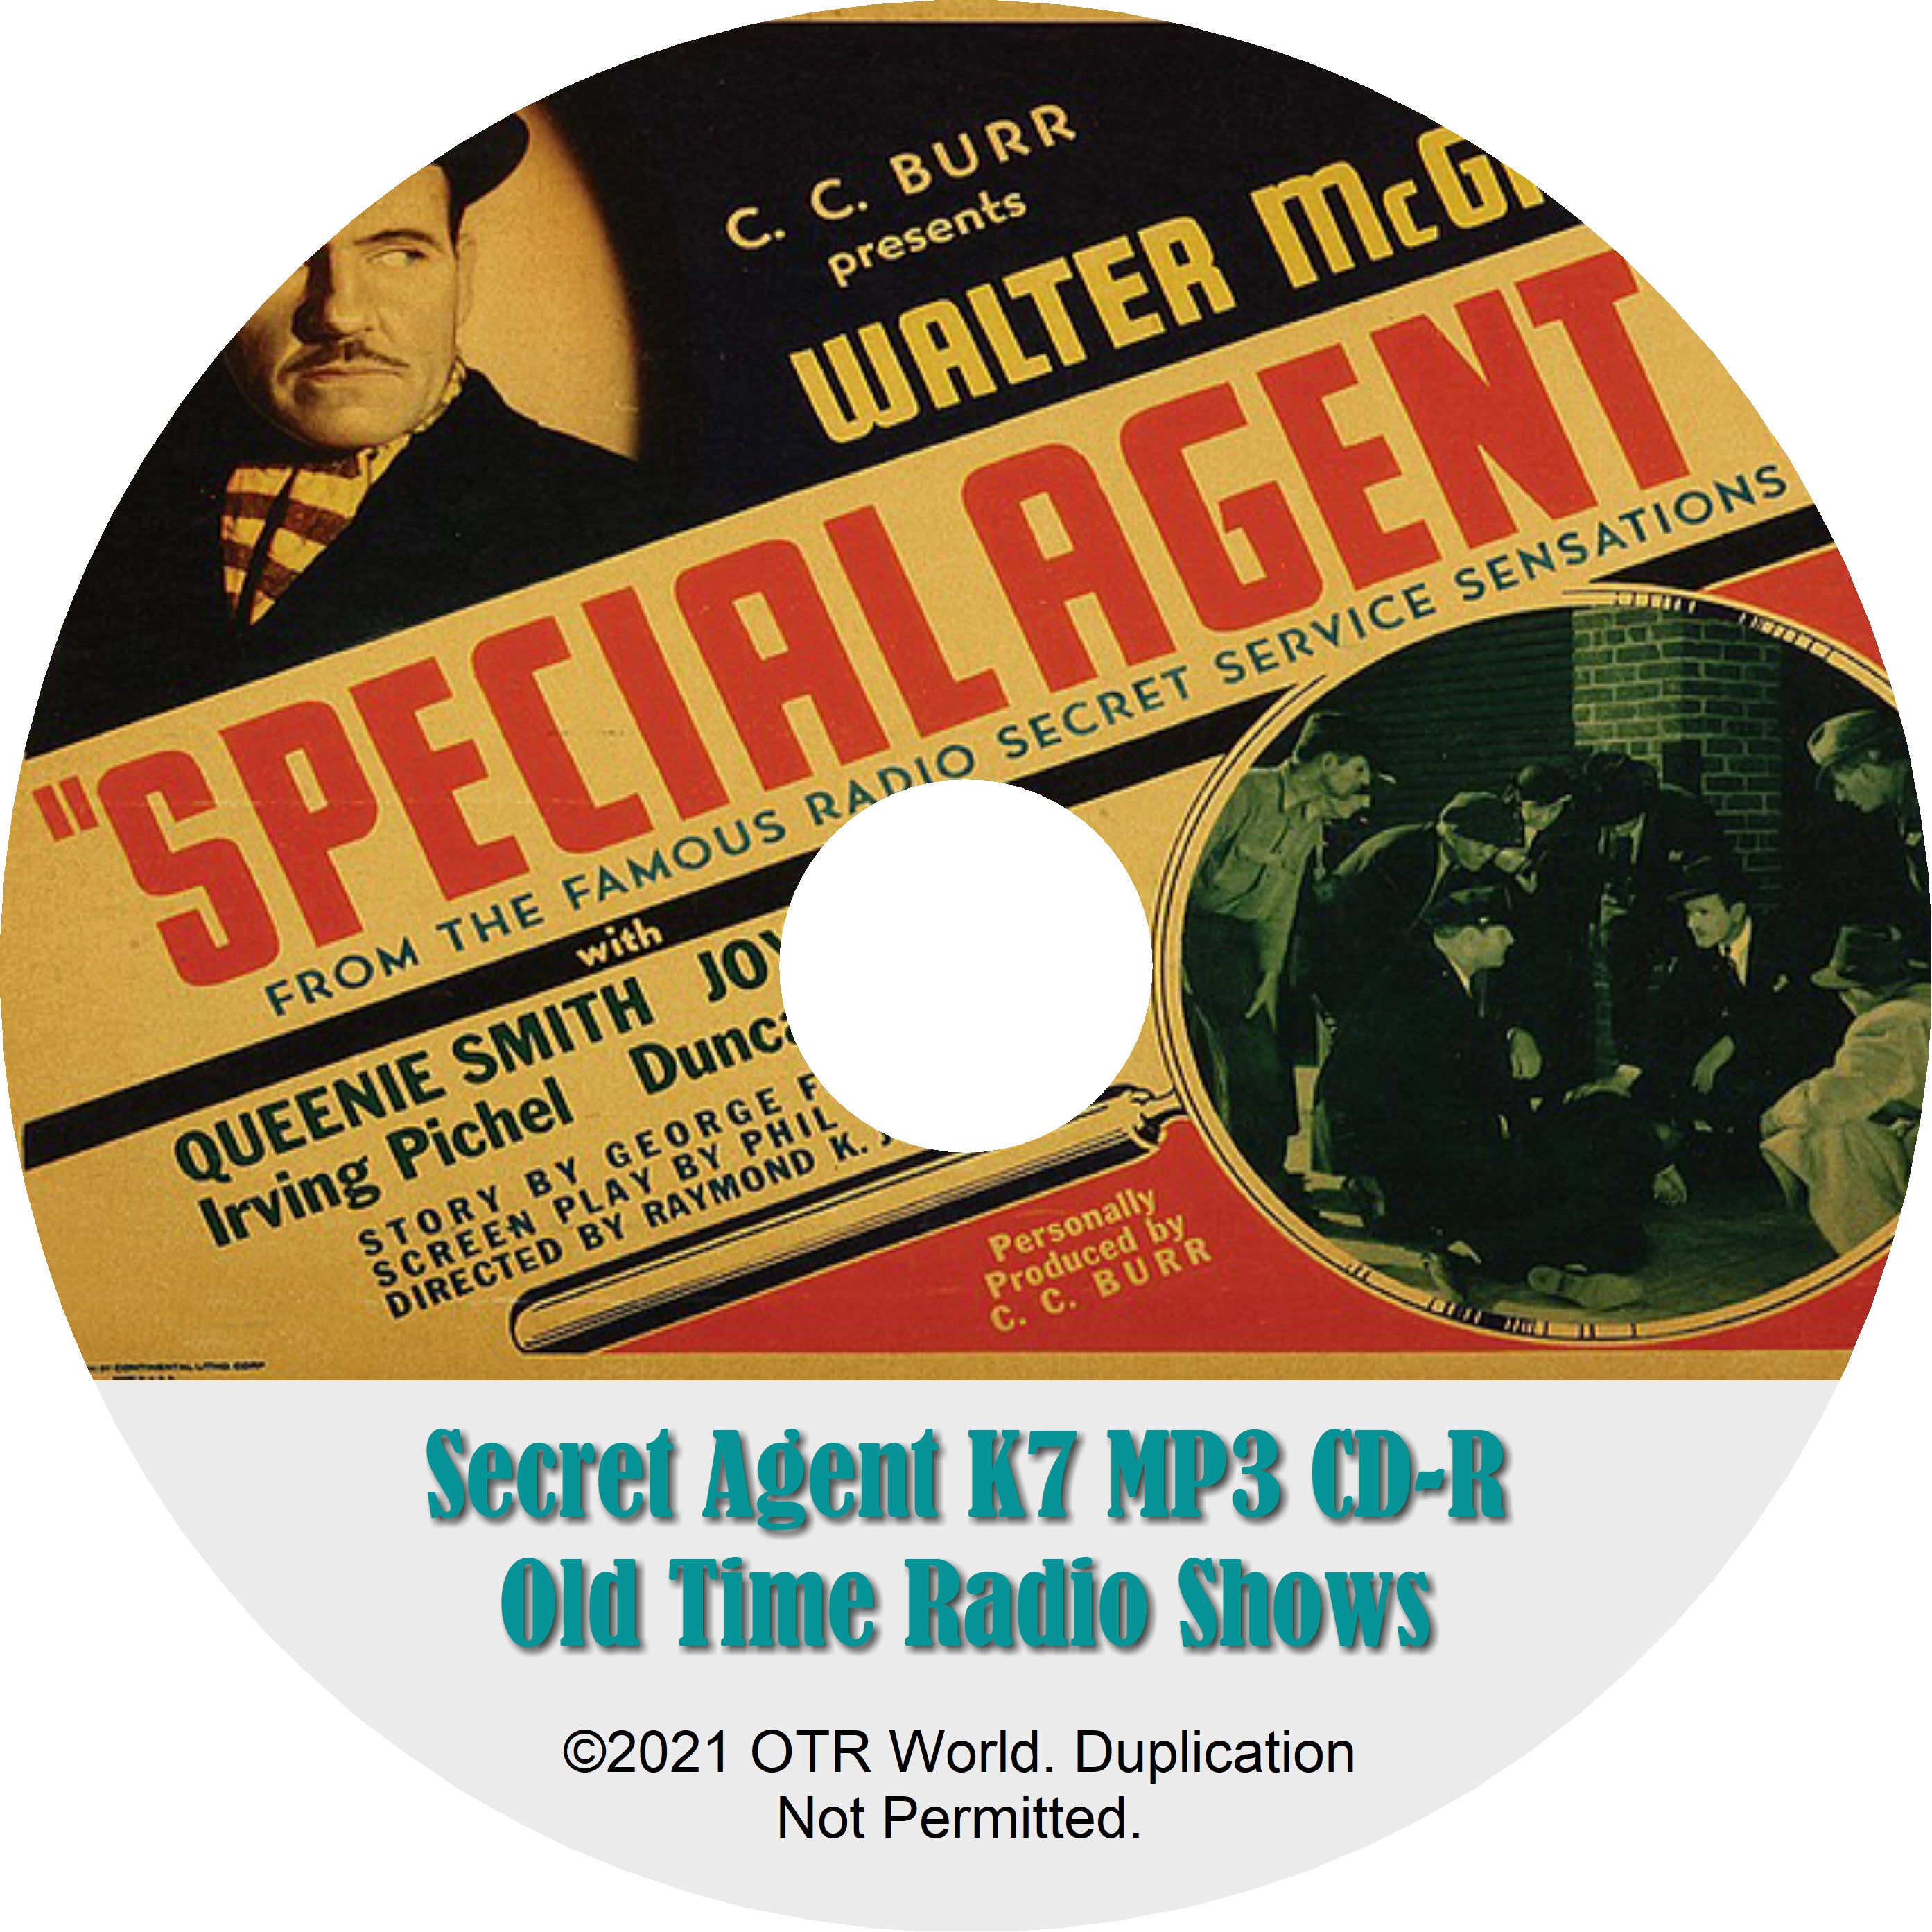 Secret Agent K7 Returns OTRS OTR Old Time Radio Shows MP3 On CD-R 68 Episodes